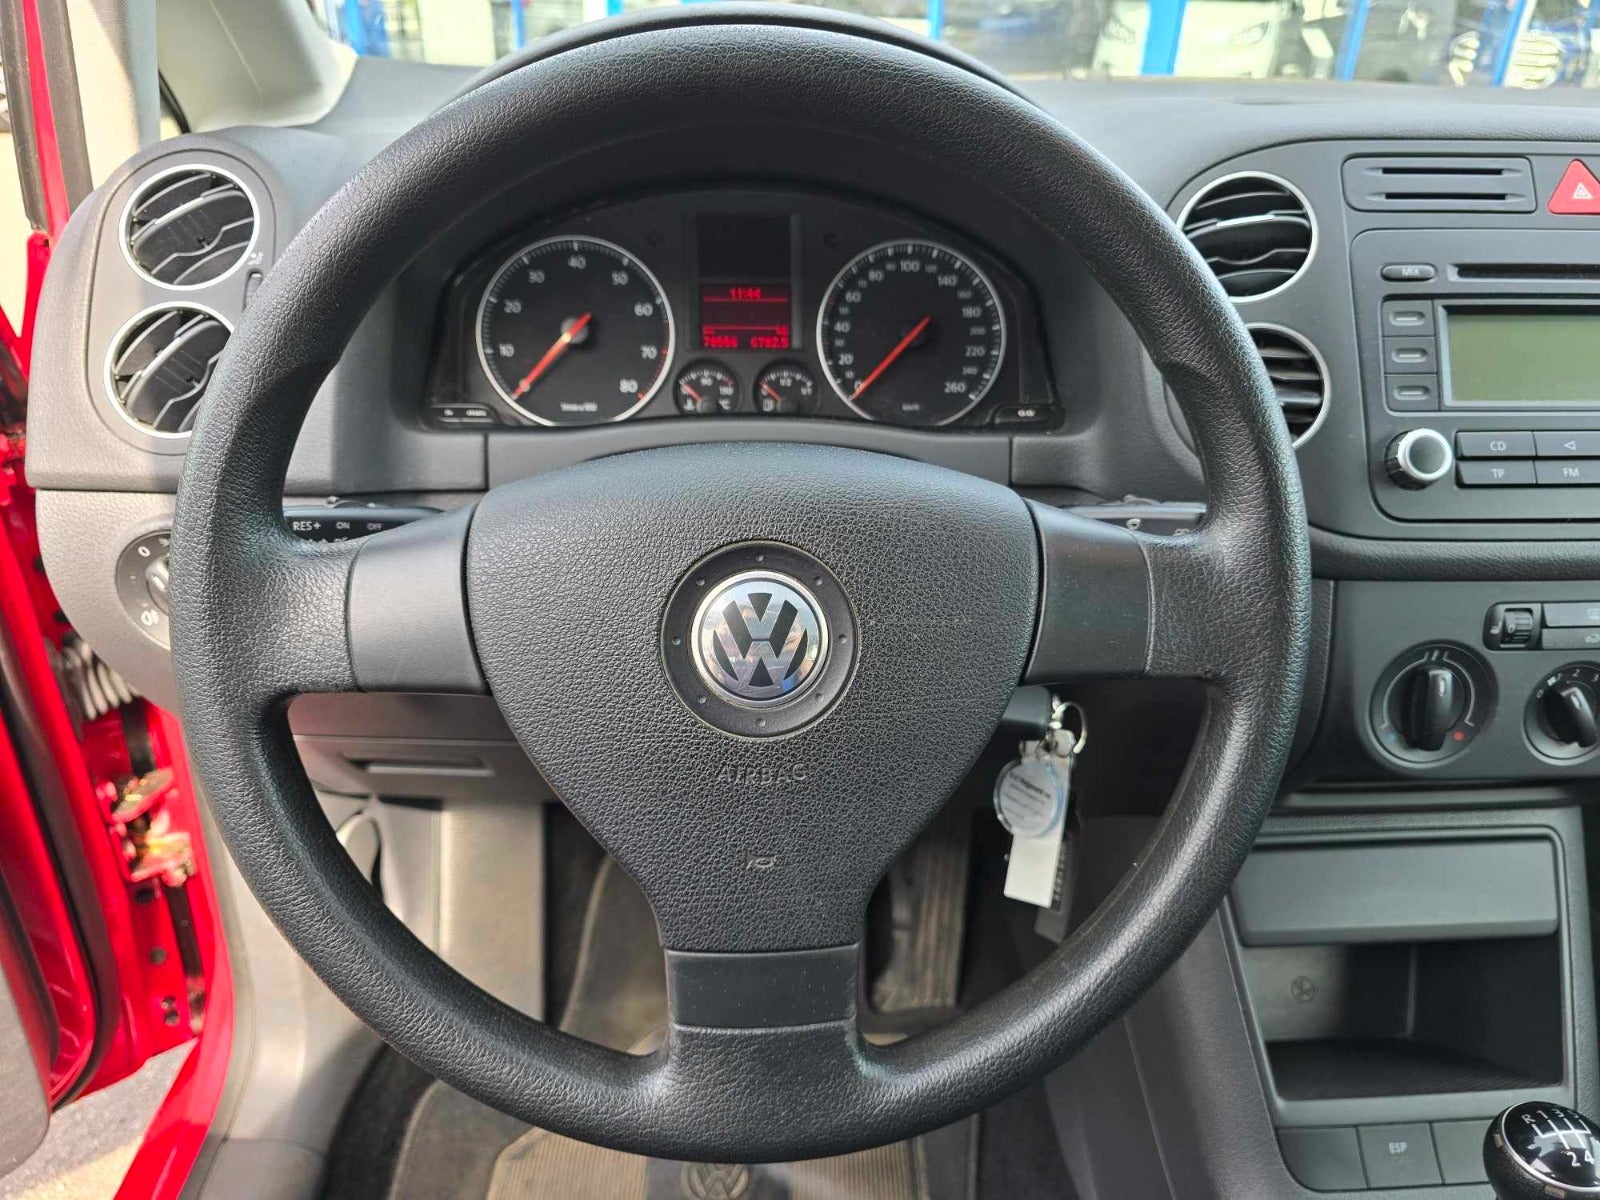 VW Golf Plus 2006